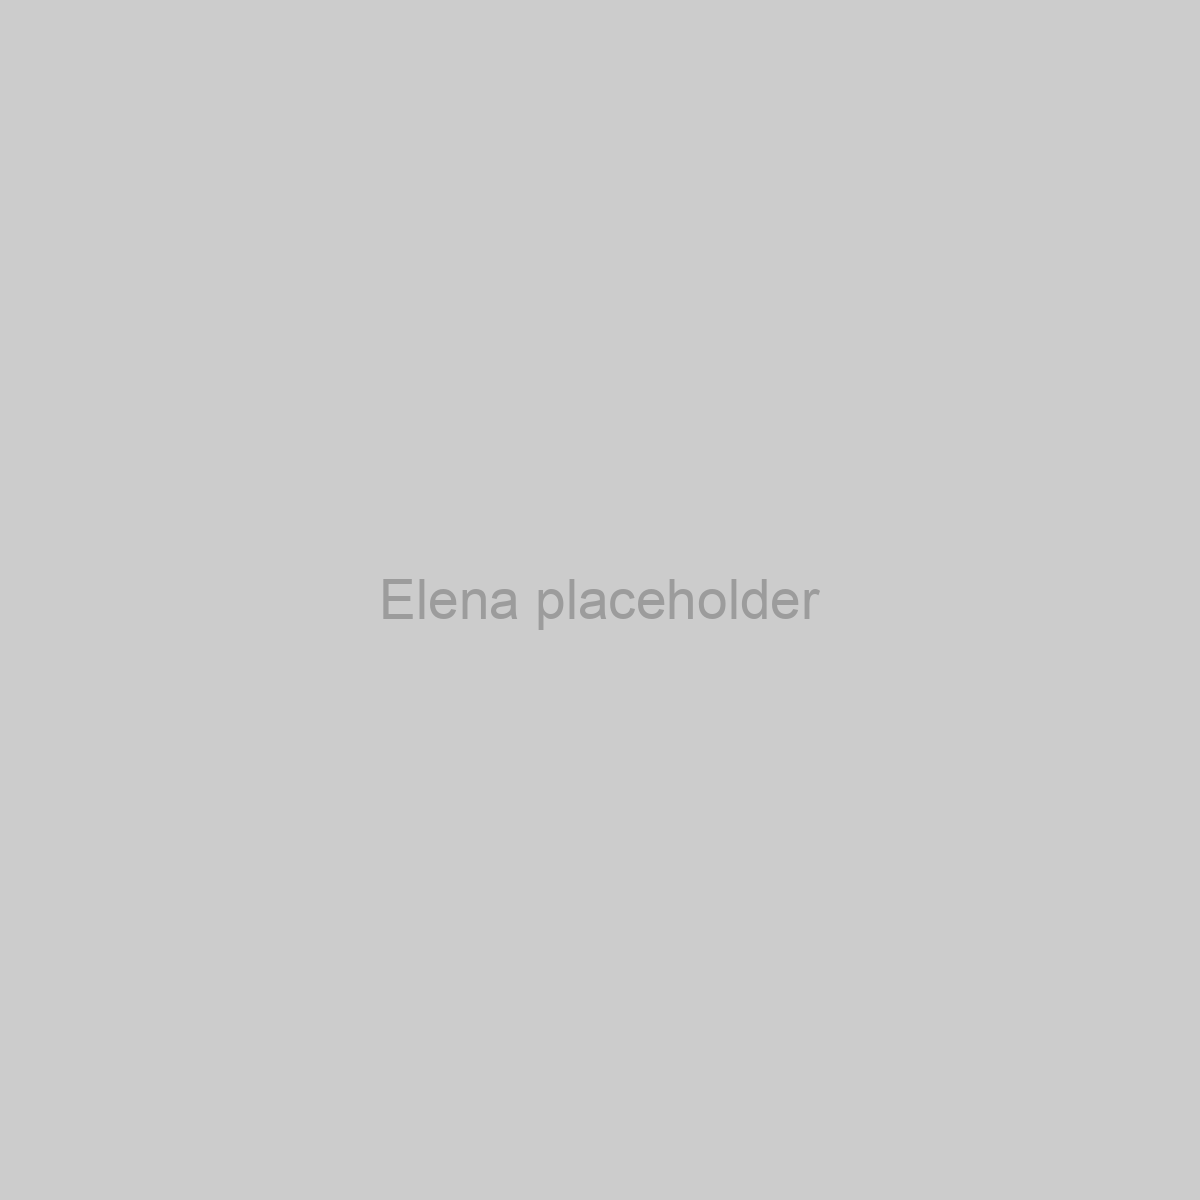 Elena Placeholder Image